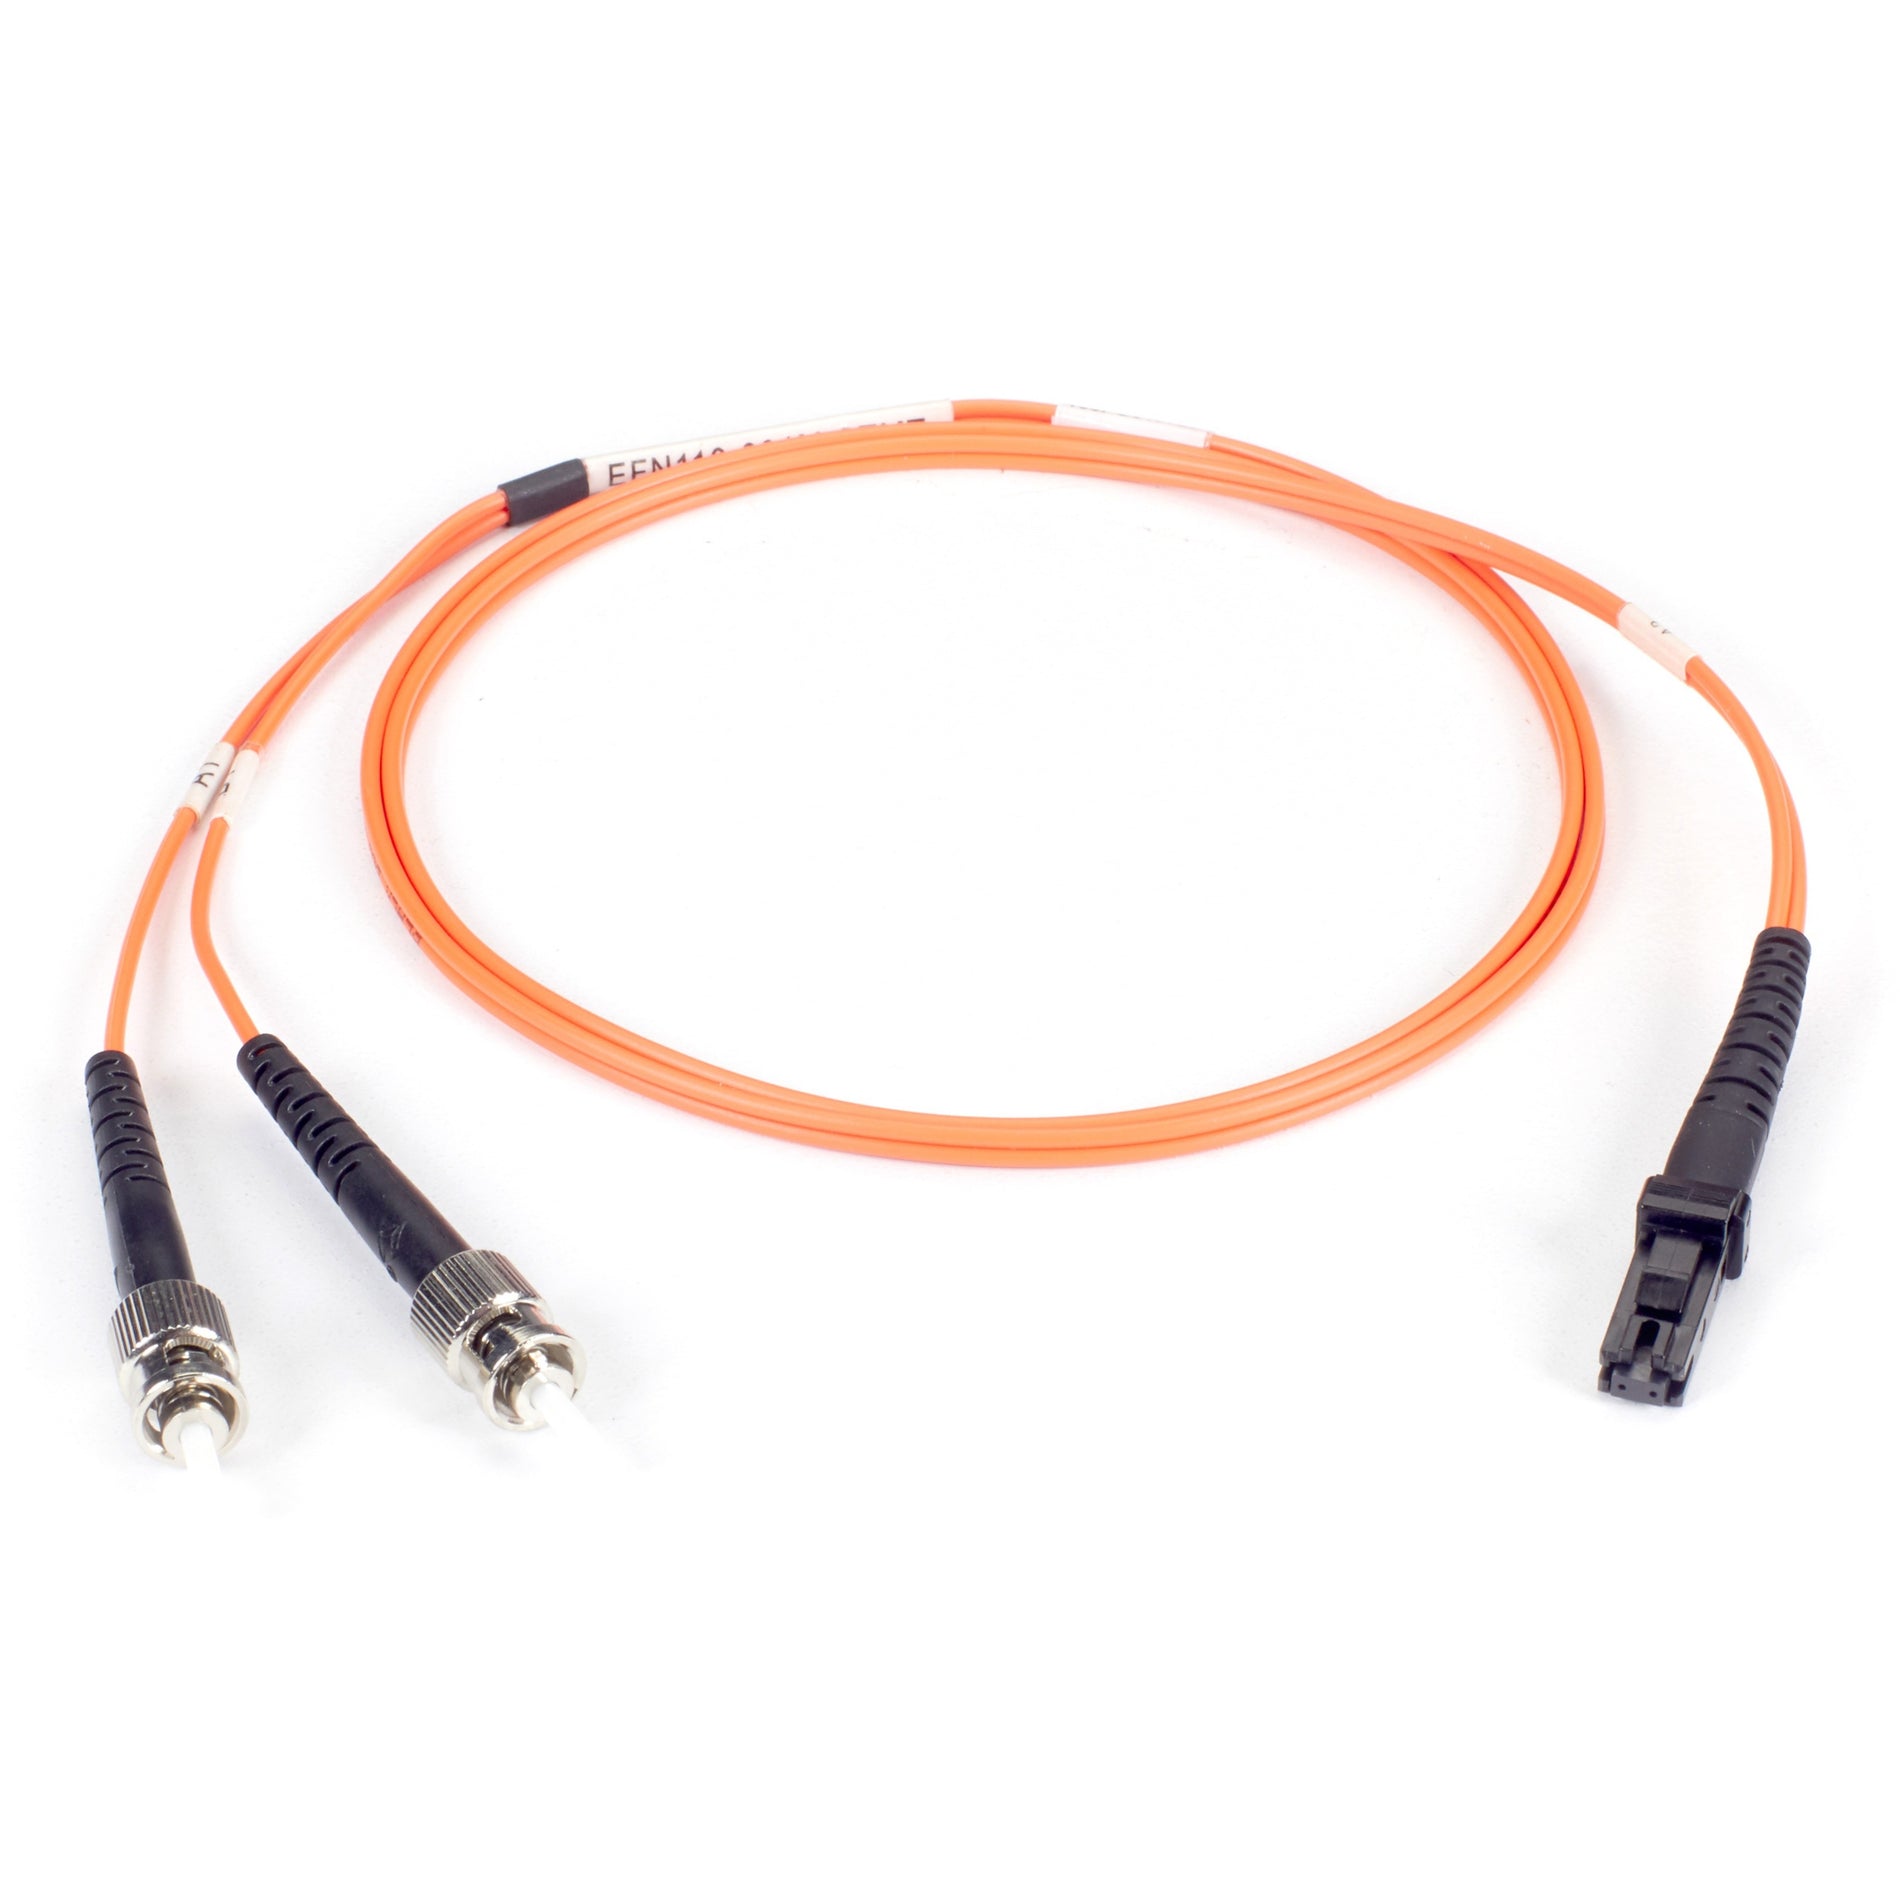 Black Box EFN110-015M-STLC Fiber Optic Duplex Patch Network Cable, Multi-mode, 49.20 ft, ST to LC Male Connectors, Orange Jacket